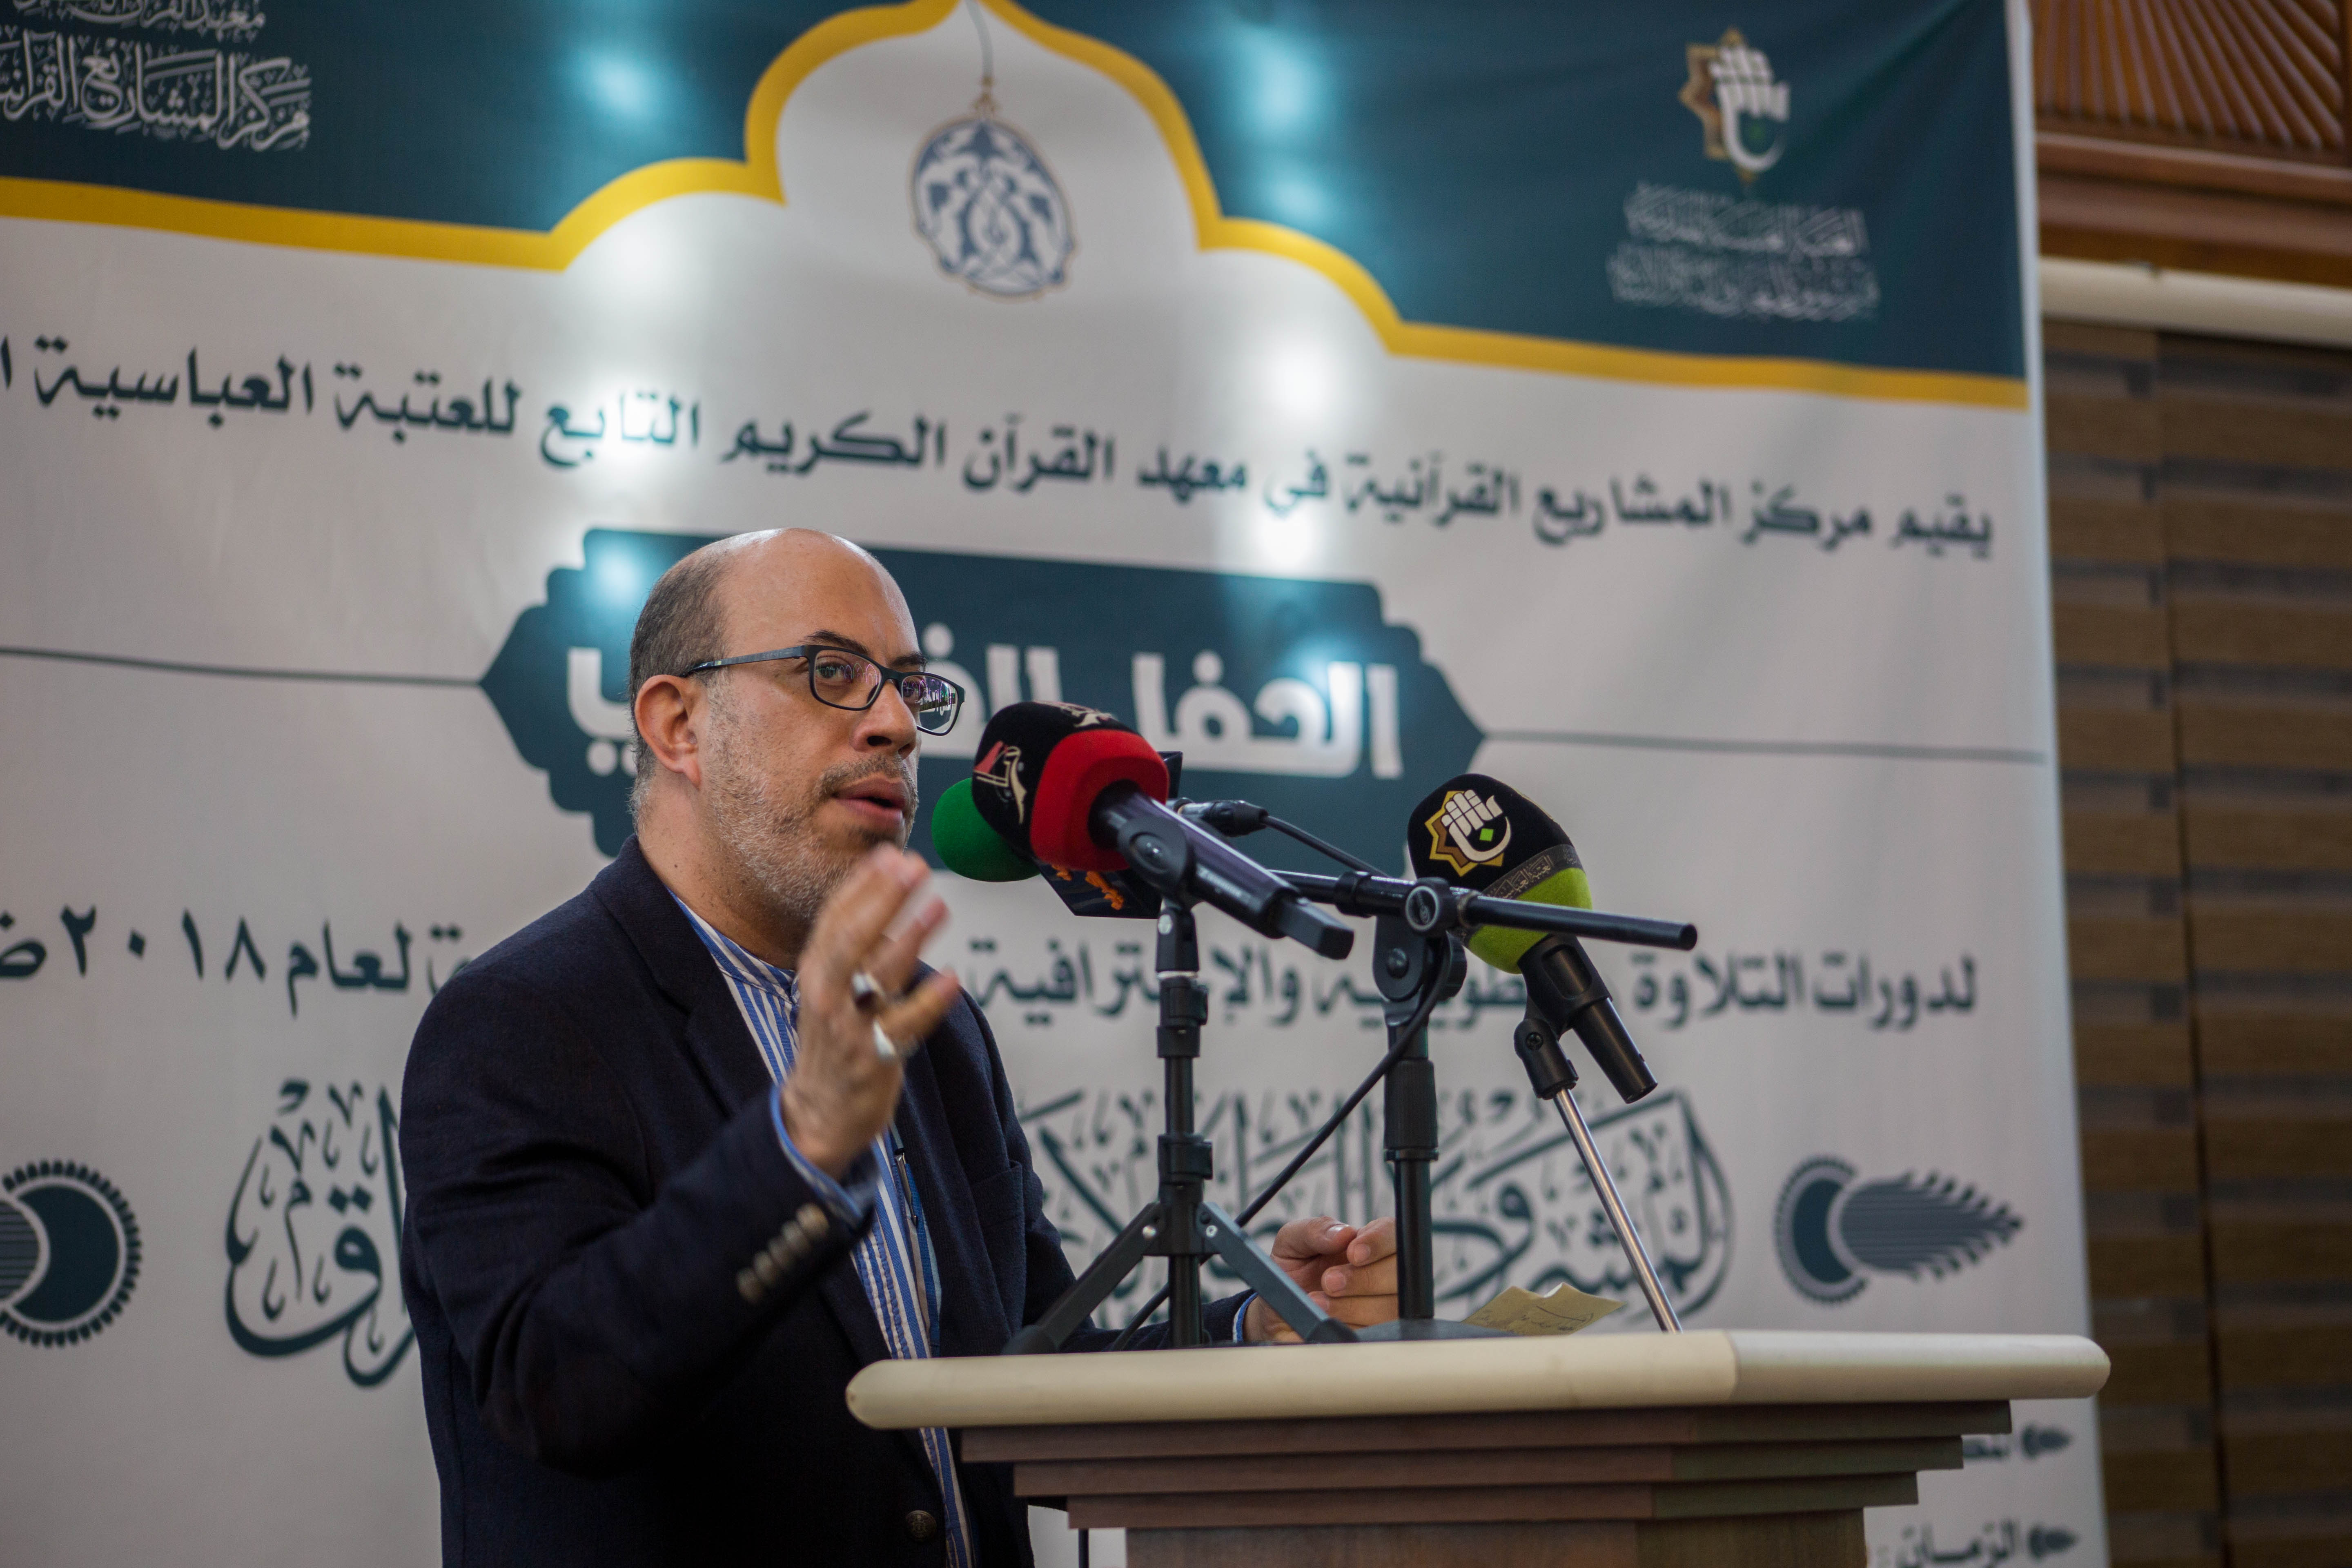 معهد القرآن الكريم يختتم دوراته التطويرية والاحترافية ضمن المشروع الوطني لإعداد القرّاء